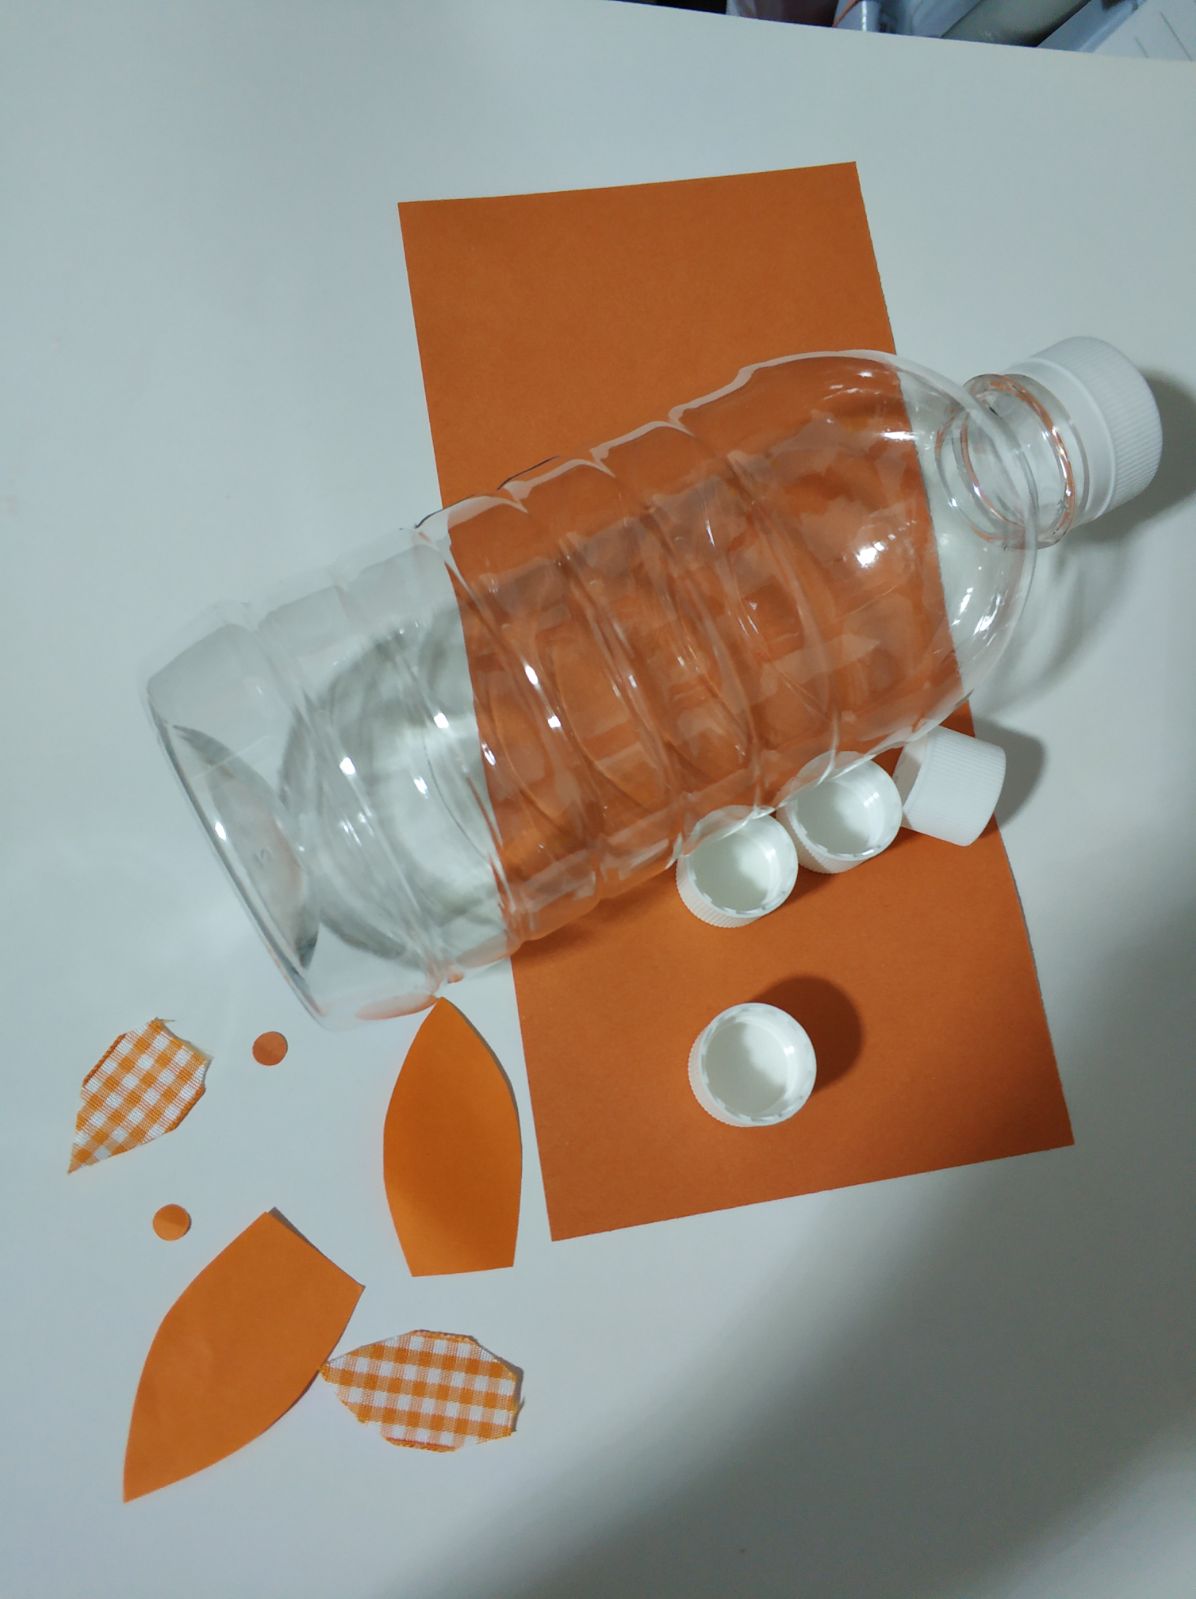 塑料瓶小动物手工小制作废物利用环保变废为宝环保手工美劳-图3